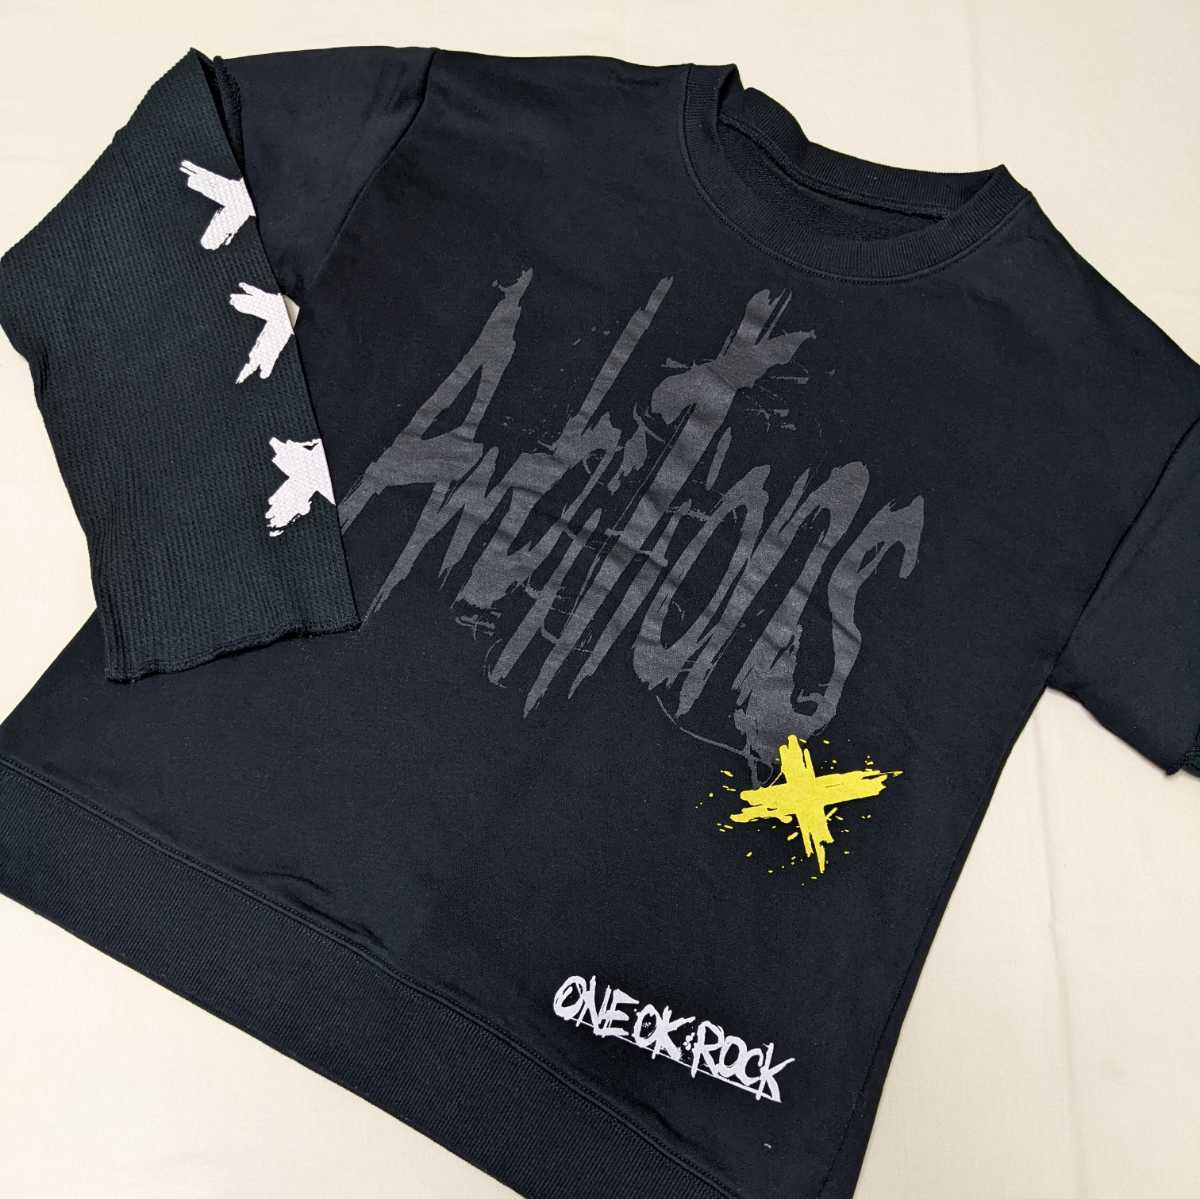 Ai98 One 17 Ambitions Japan L Ok Rock Tour グッズ スウェット トレーナー メンズ ライブ レディース ワンオクロック 長袖 黒 流行のアイテム Ok